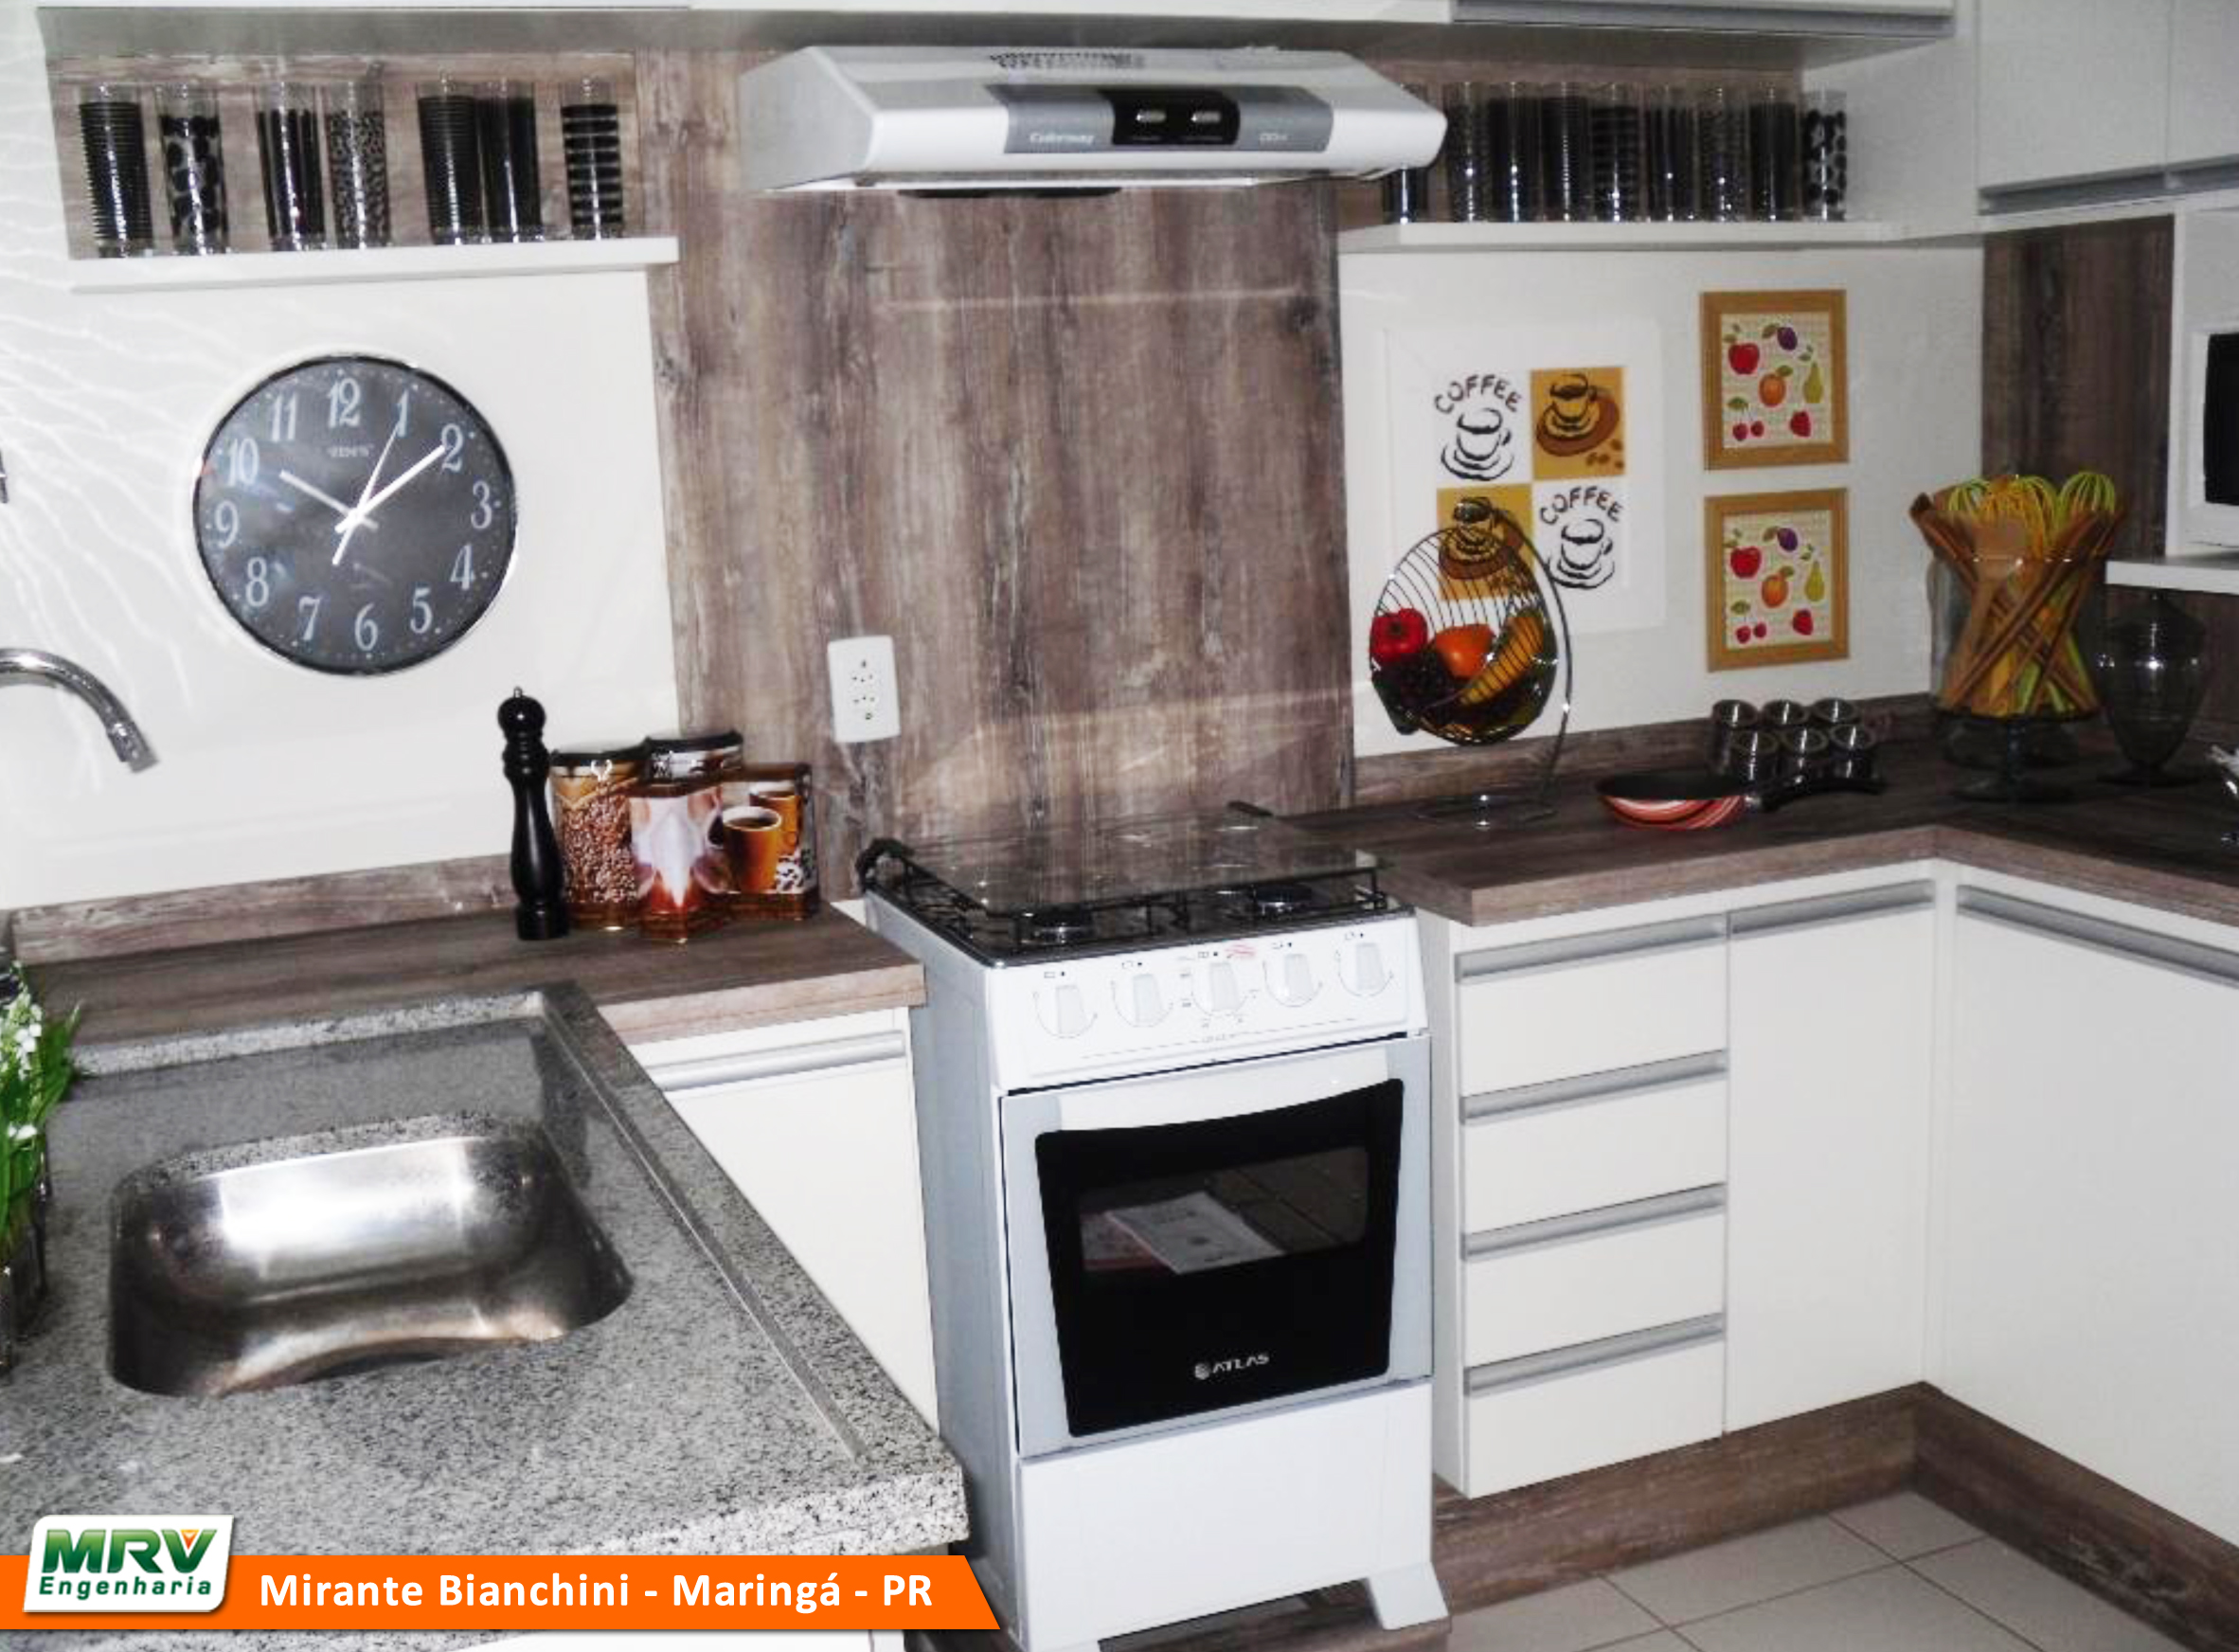 Cozinha montada com fogão, depurador de ar, armários brancos, pia de granito e com decorações e um relógio na parede